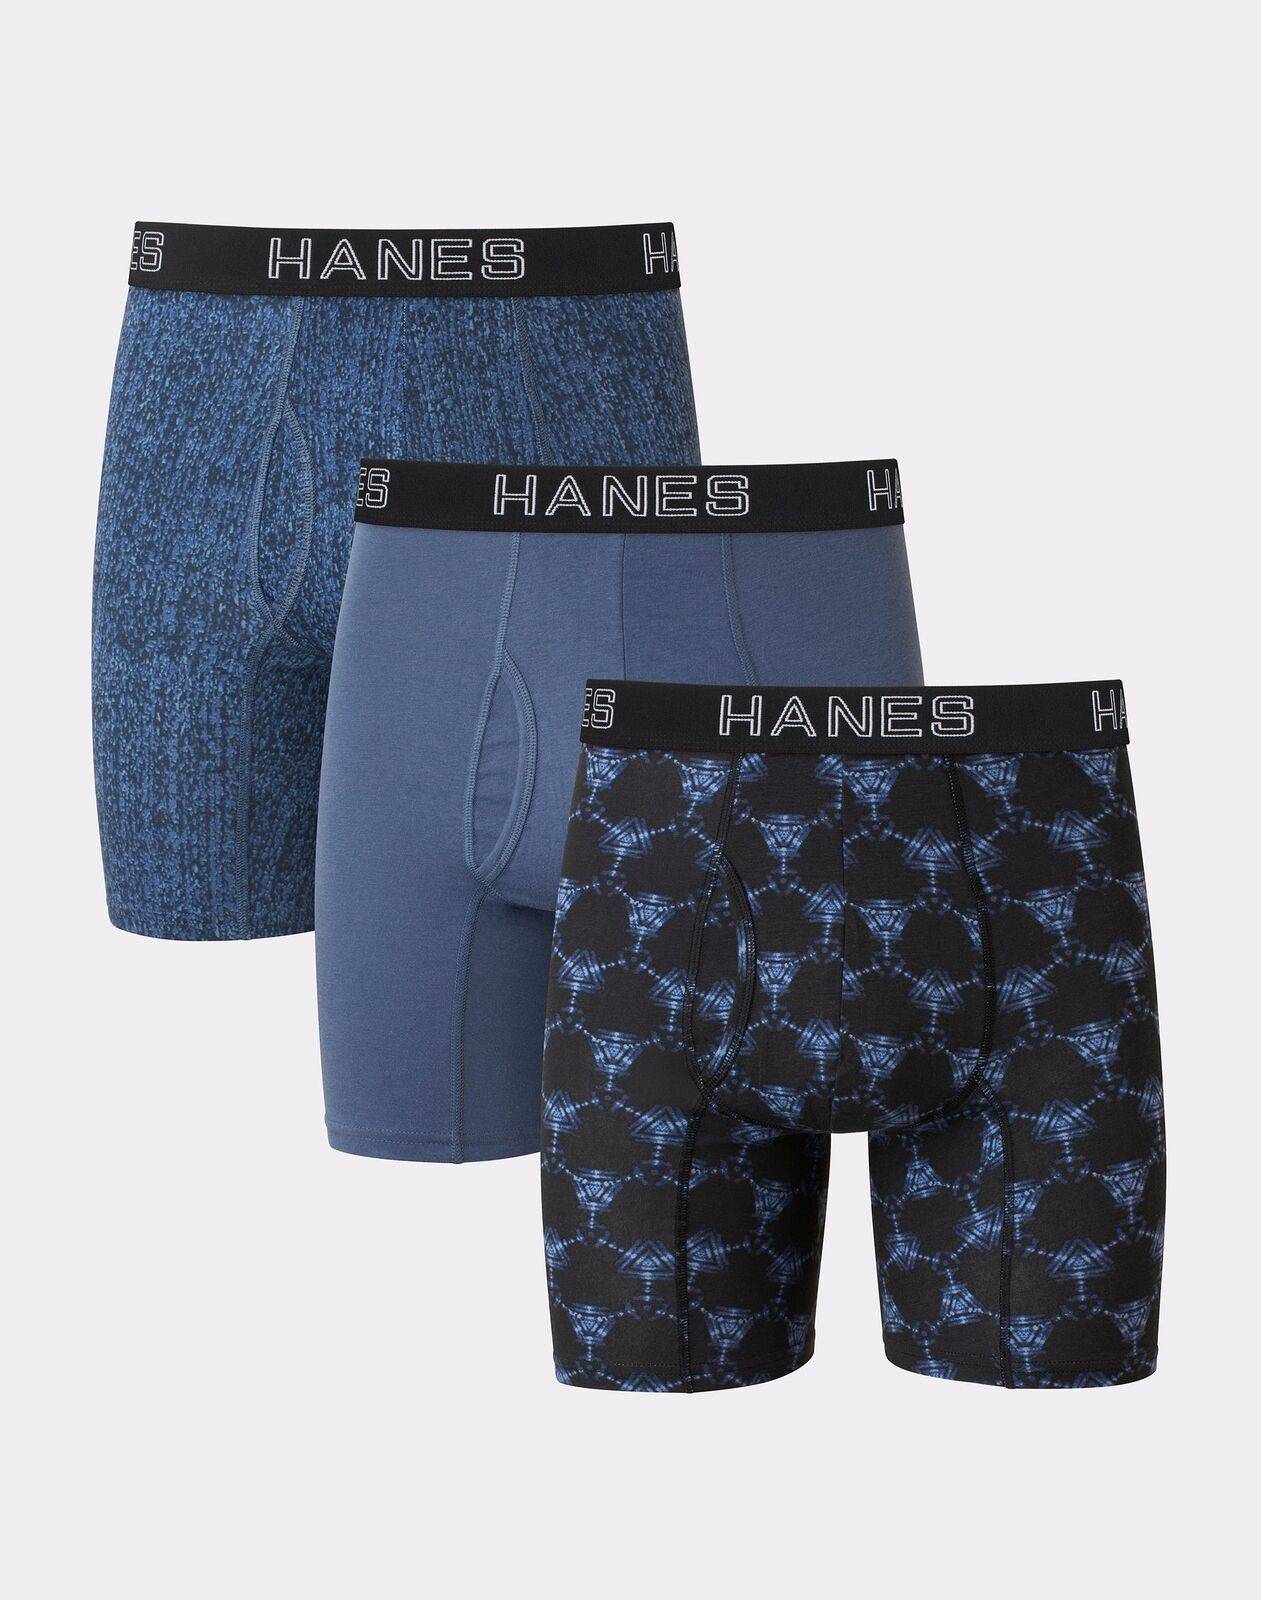 Hanes Ultimate Men's Stretch Brief 6-Pack Underwear Comfort Flex